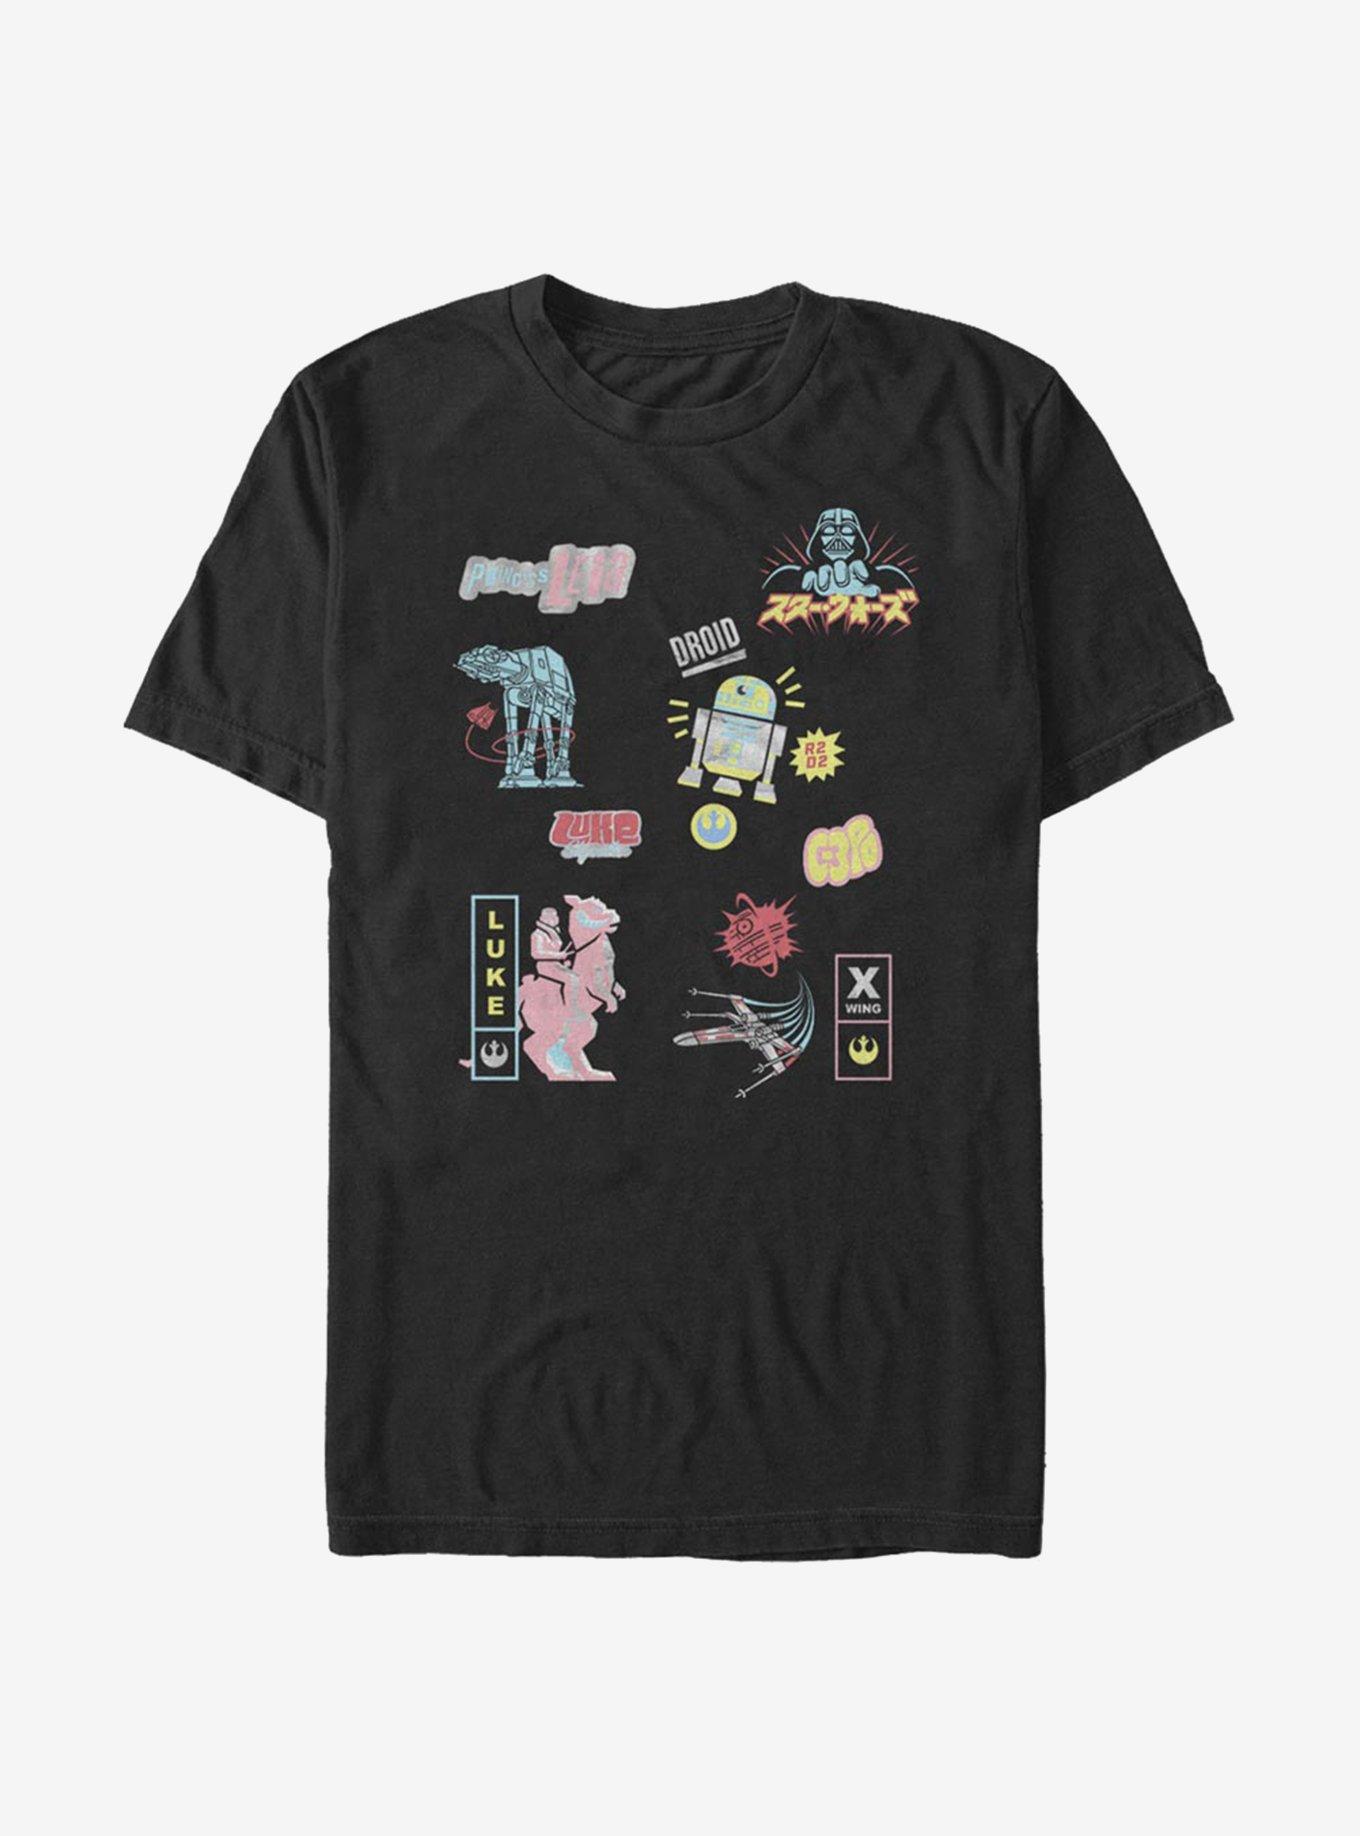 Star Wars Character Glitch T-Shirt